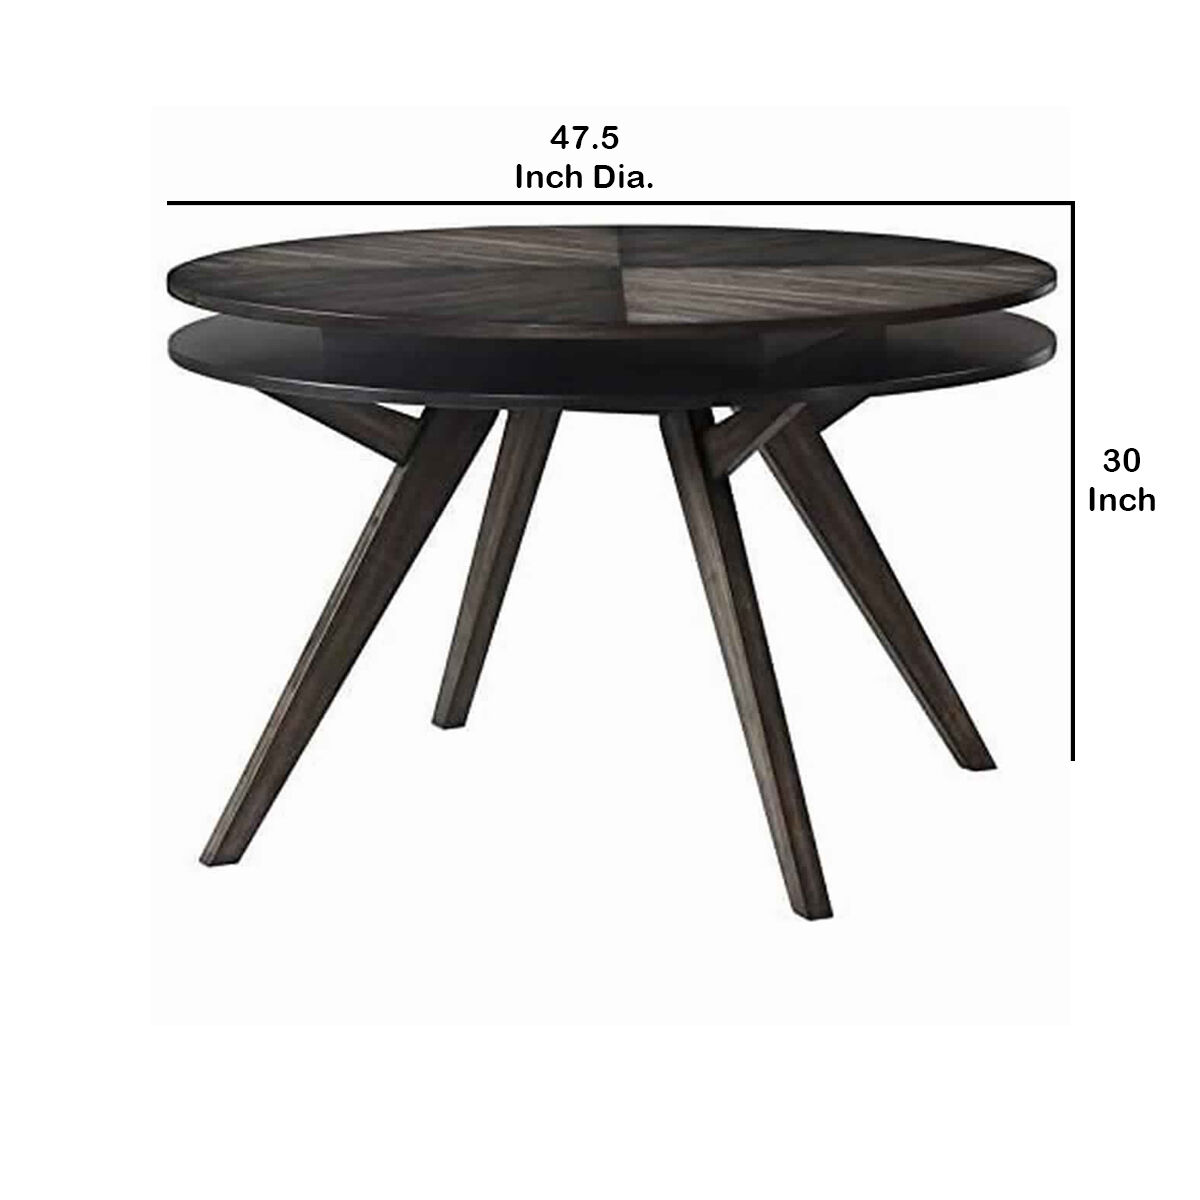 Round Wooden Dining Table with Storage Shelf, Dark Brown